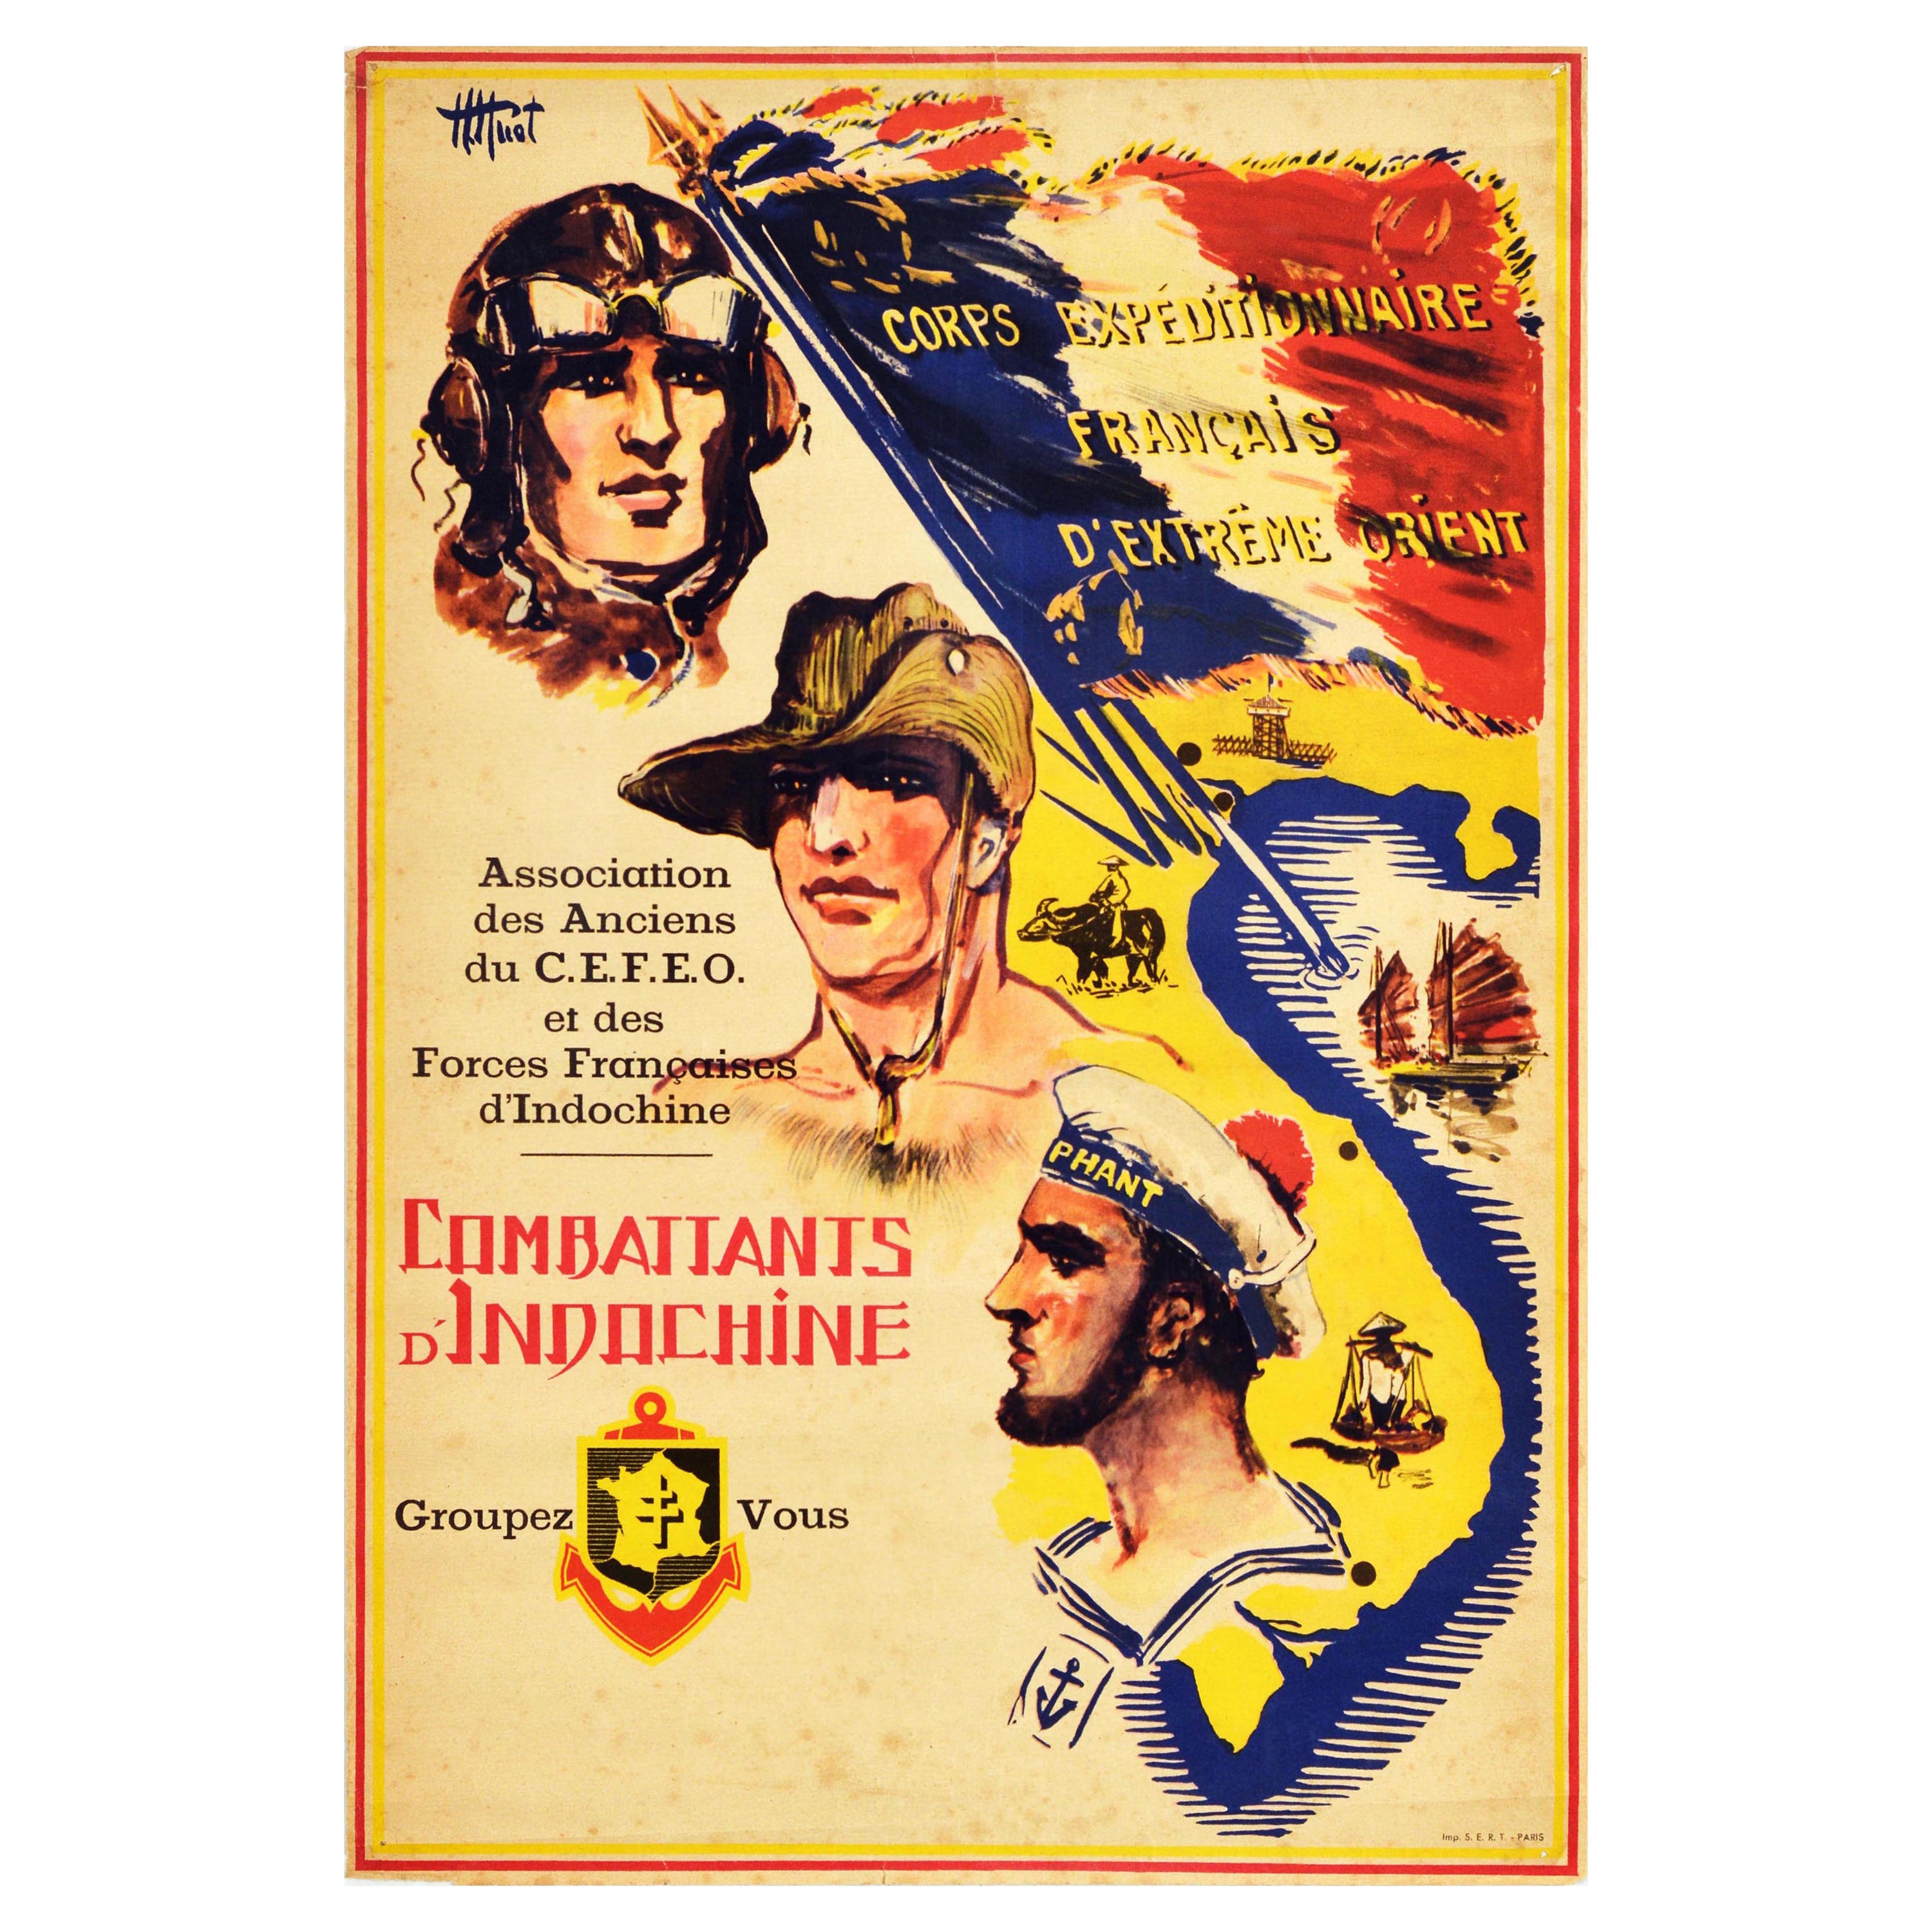 Original Vintage Propagandaplakat „ Combattants Indochine“, Französisches Corps Indochina, Indochina